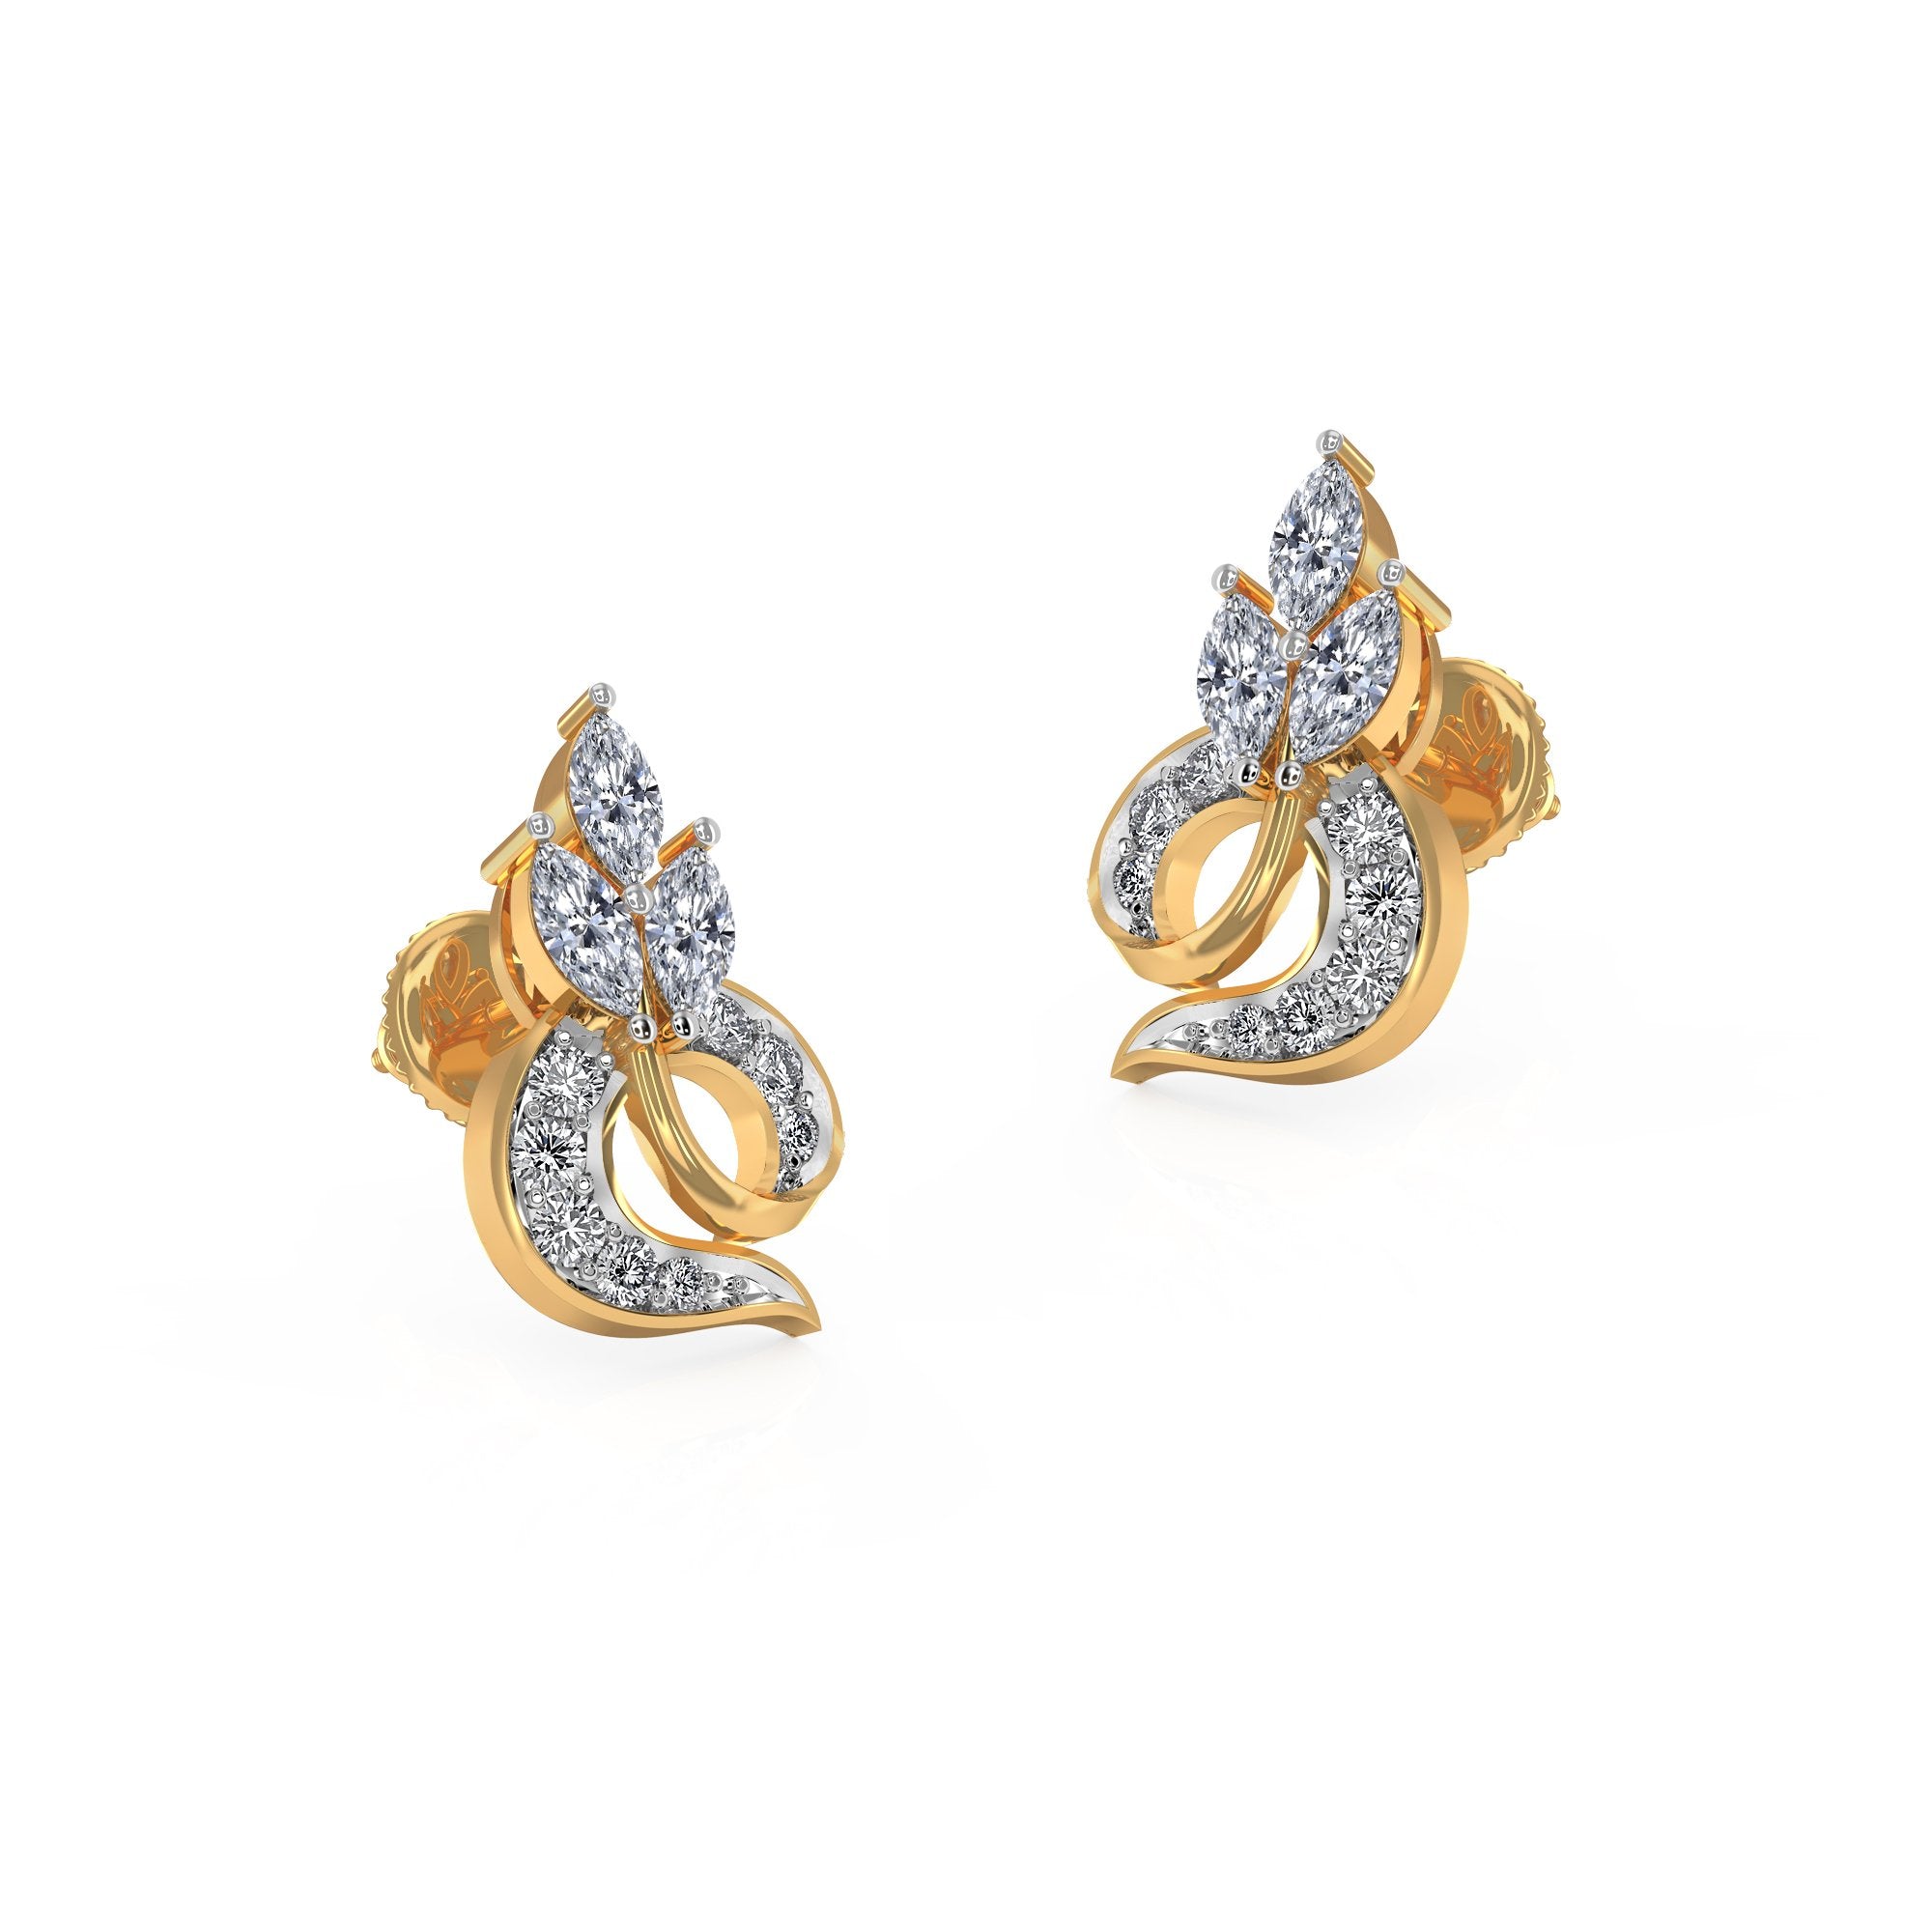 Buy Diamond Earrings Online | JCS Jewellers – JCS JEWEL CREATIONS